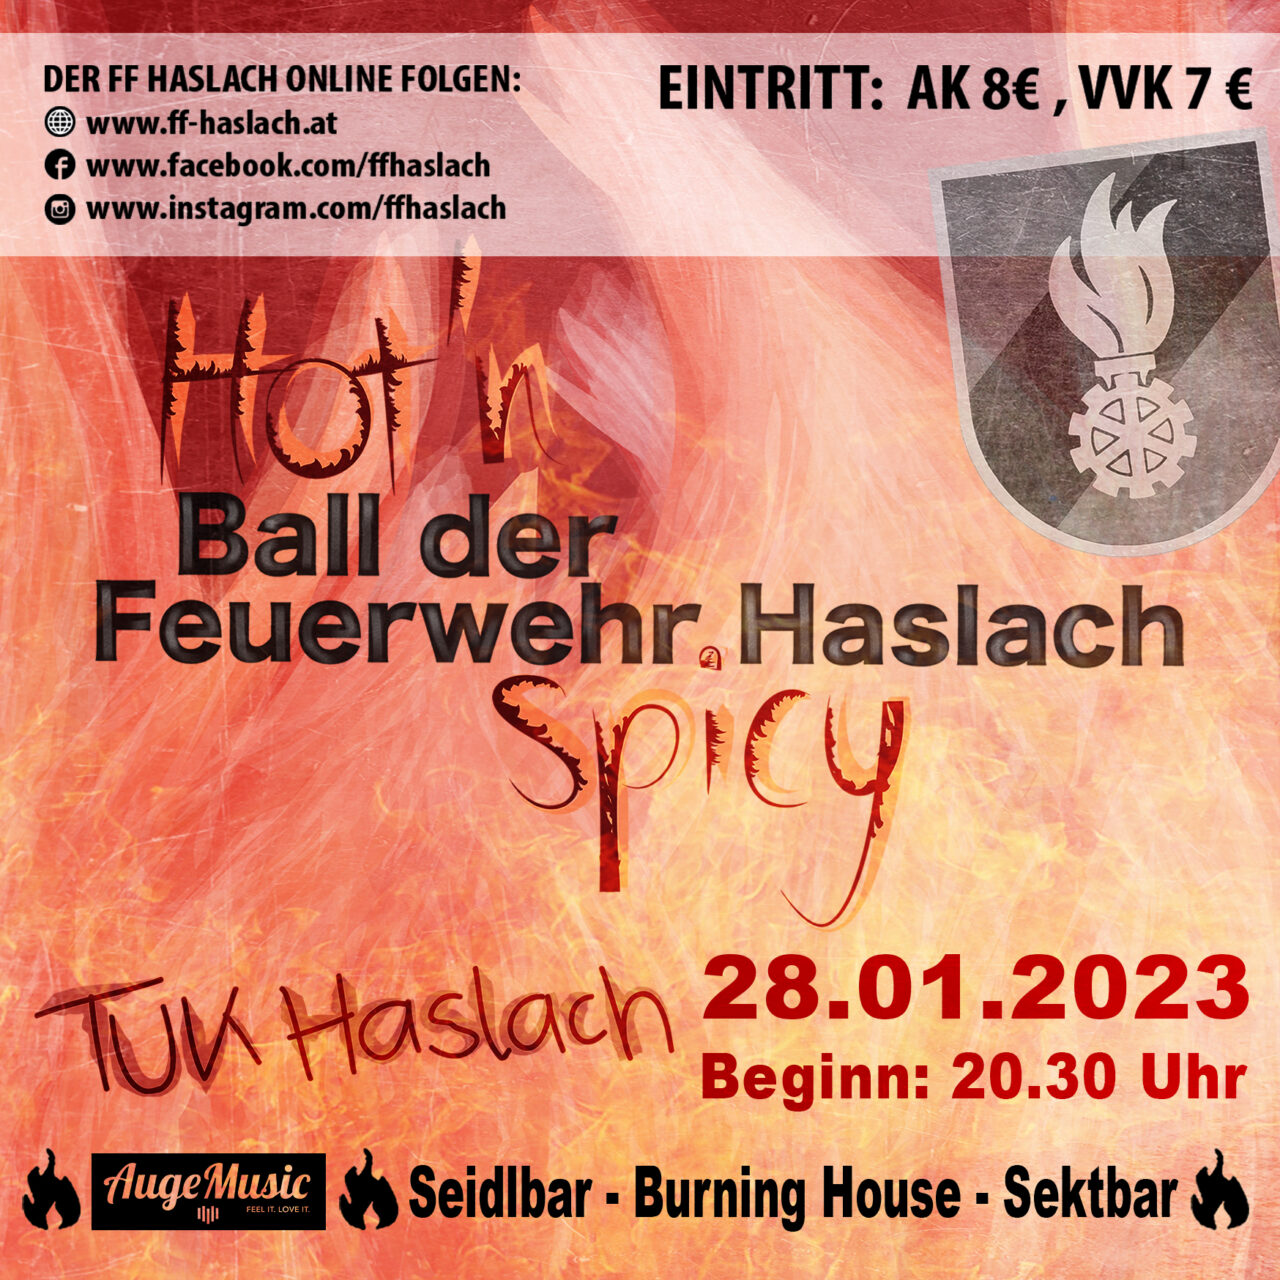 Hot'n spicy - der Ball der Feuerwehr Haslach